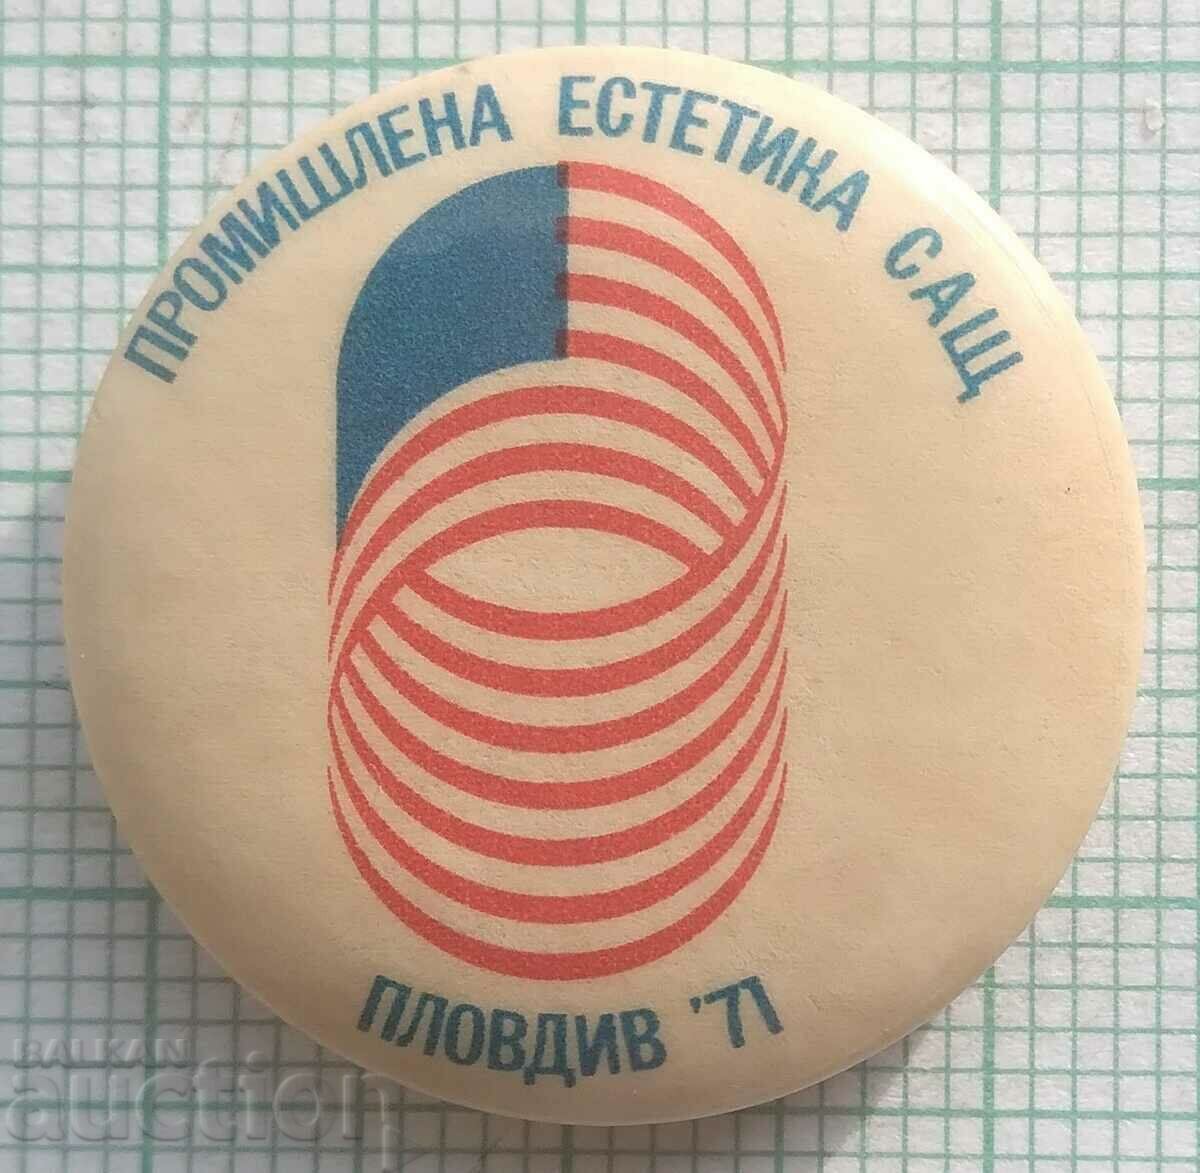 15116 Σήμα - Βιομηχανική αισθητική ΗΠΑ Plovdiv 1971